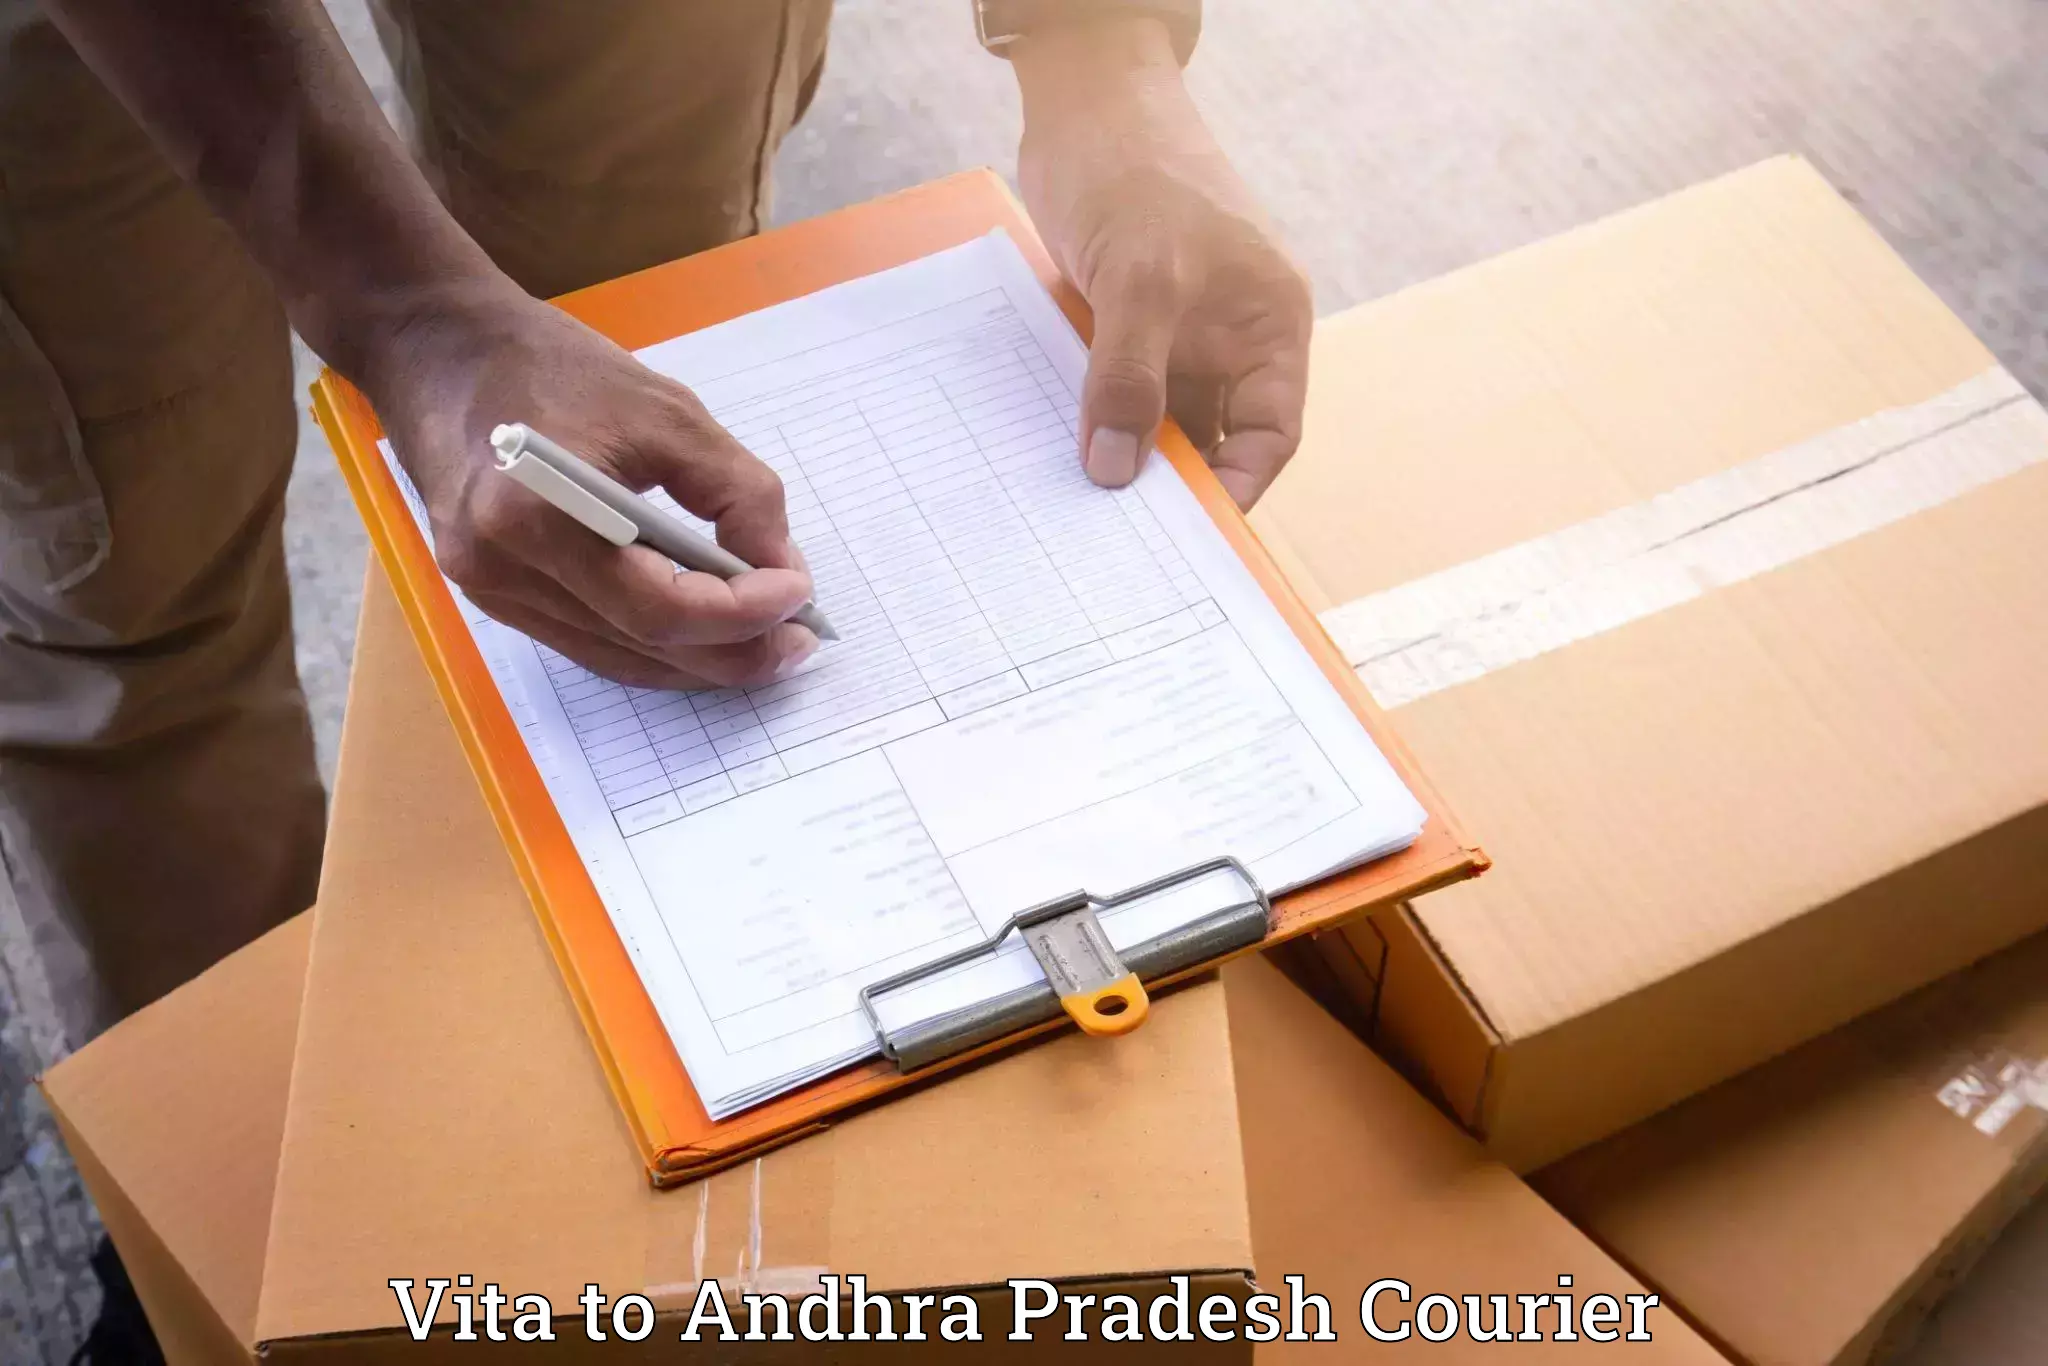 Furniture movers and packers Vita to Vizianagaram